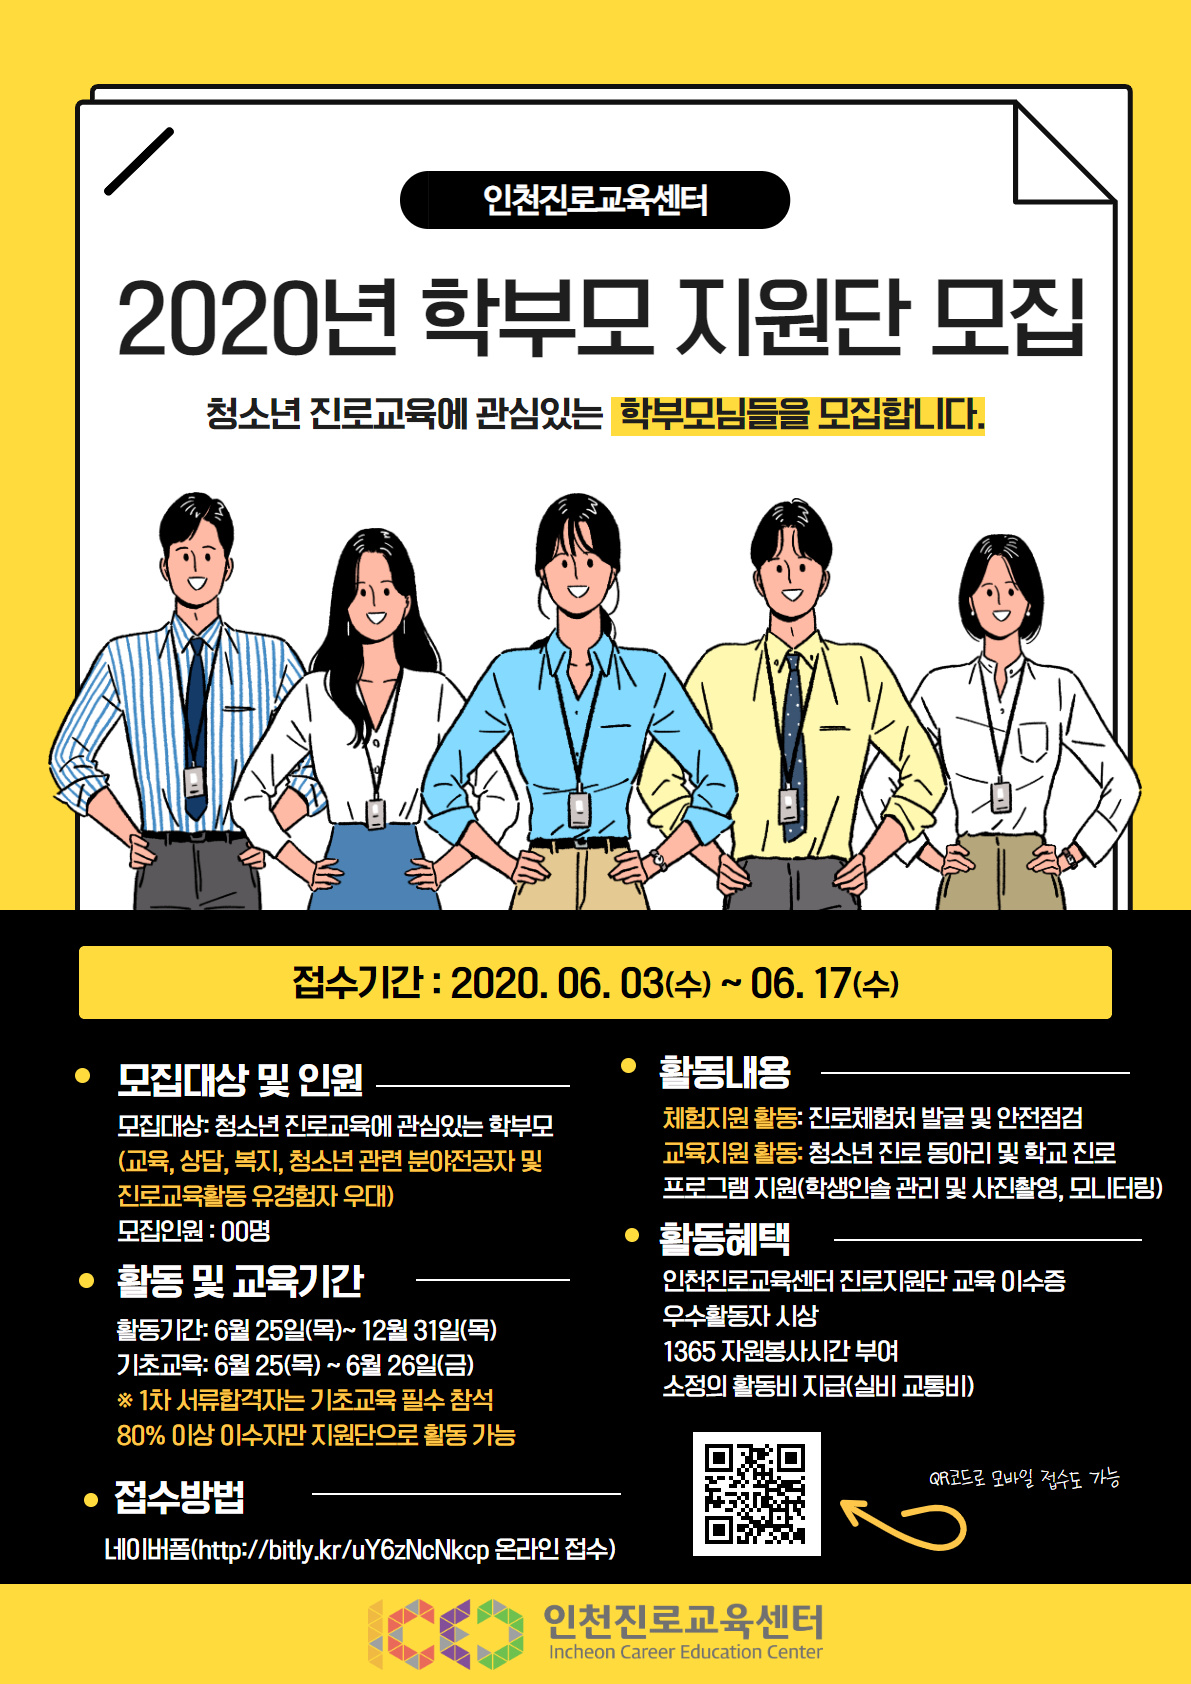 인천 진로 교육 센터